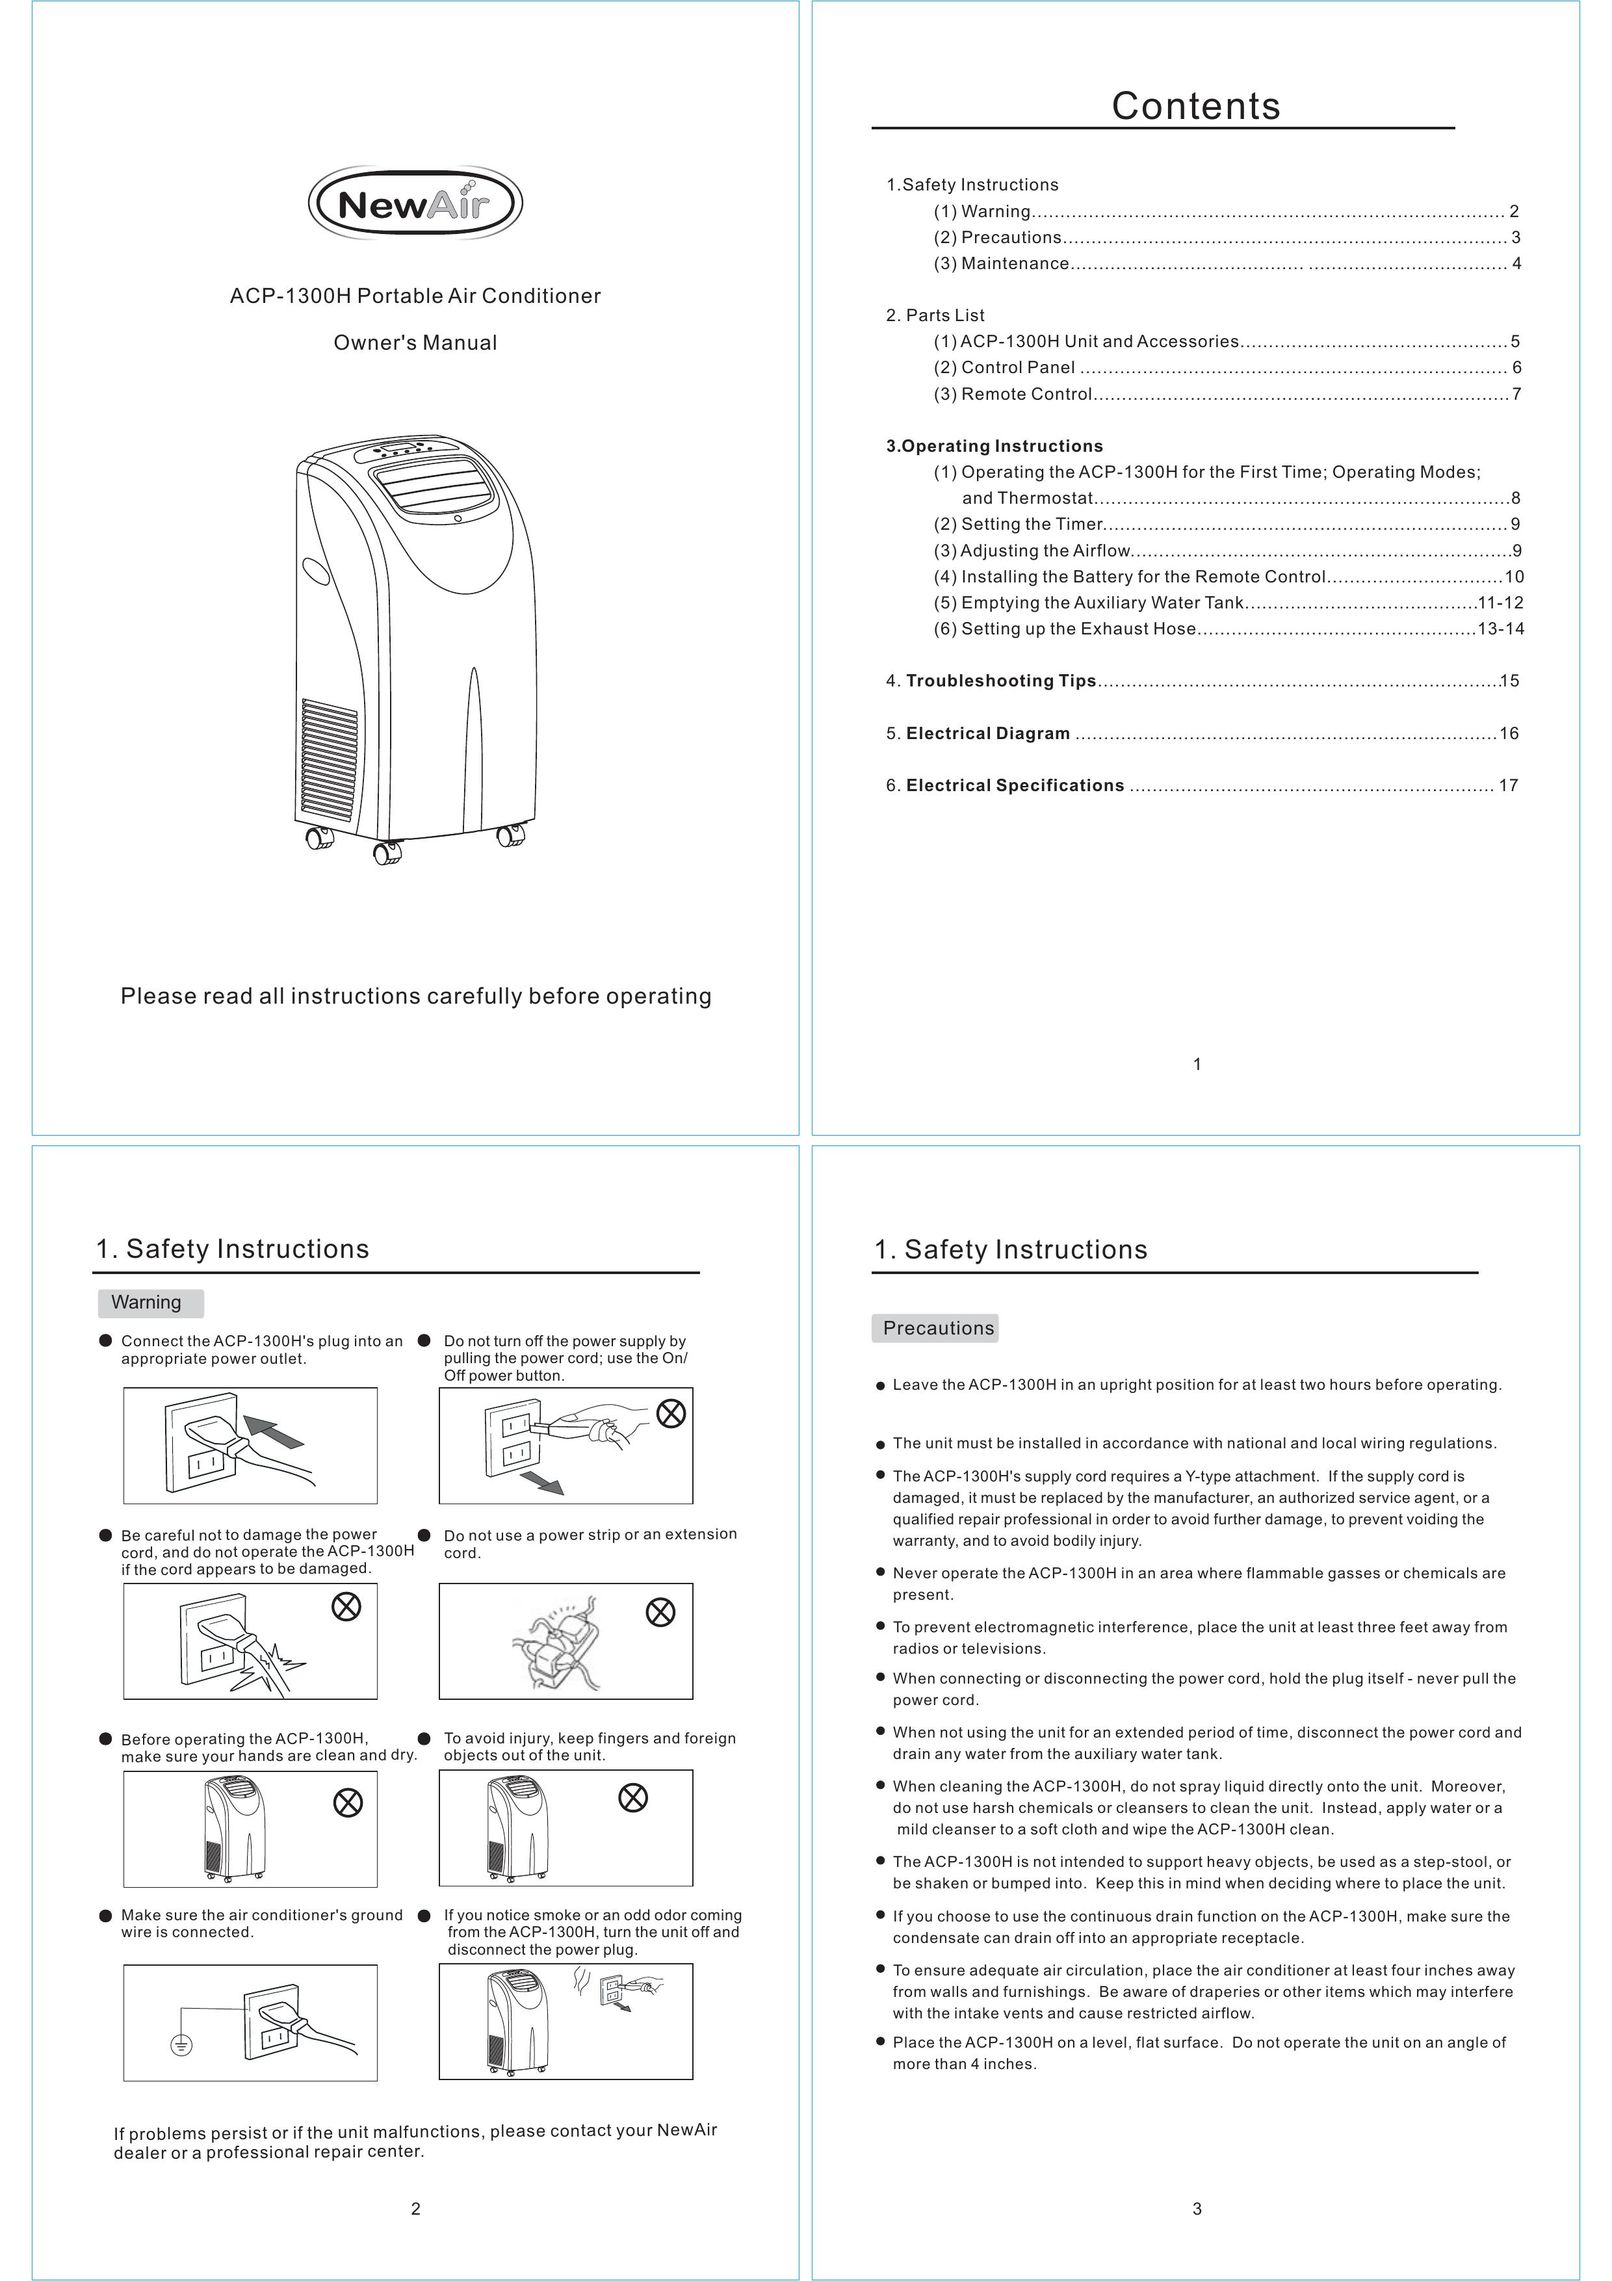 NewAir ACP-1300H Air Conditioner User Manual